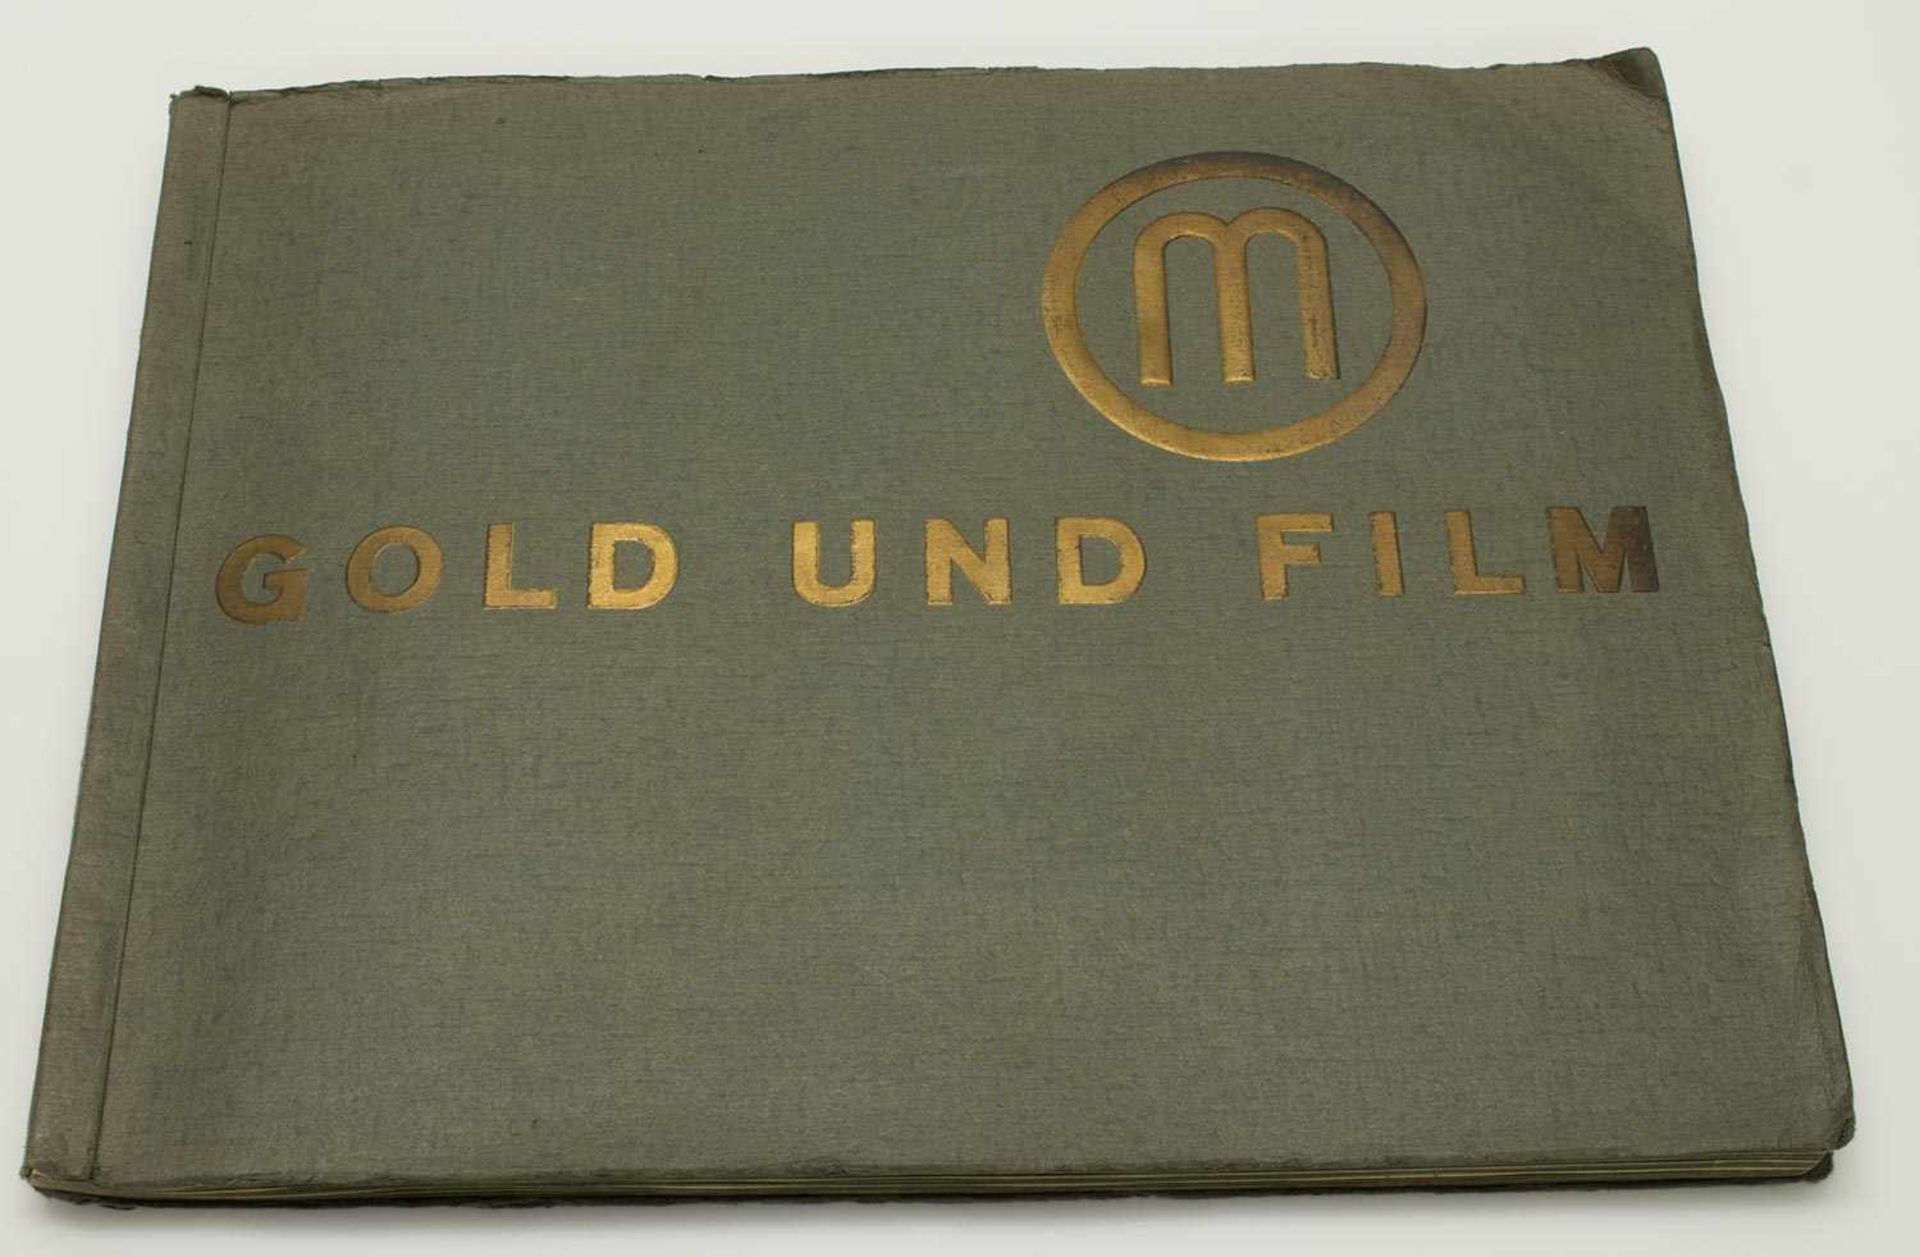 Sammelbilderalbum„Manoli Gold und Film“, Manoli AG Berlin, vollständig